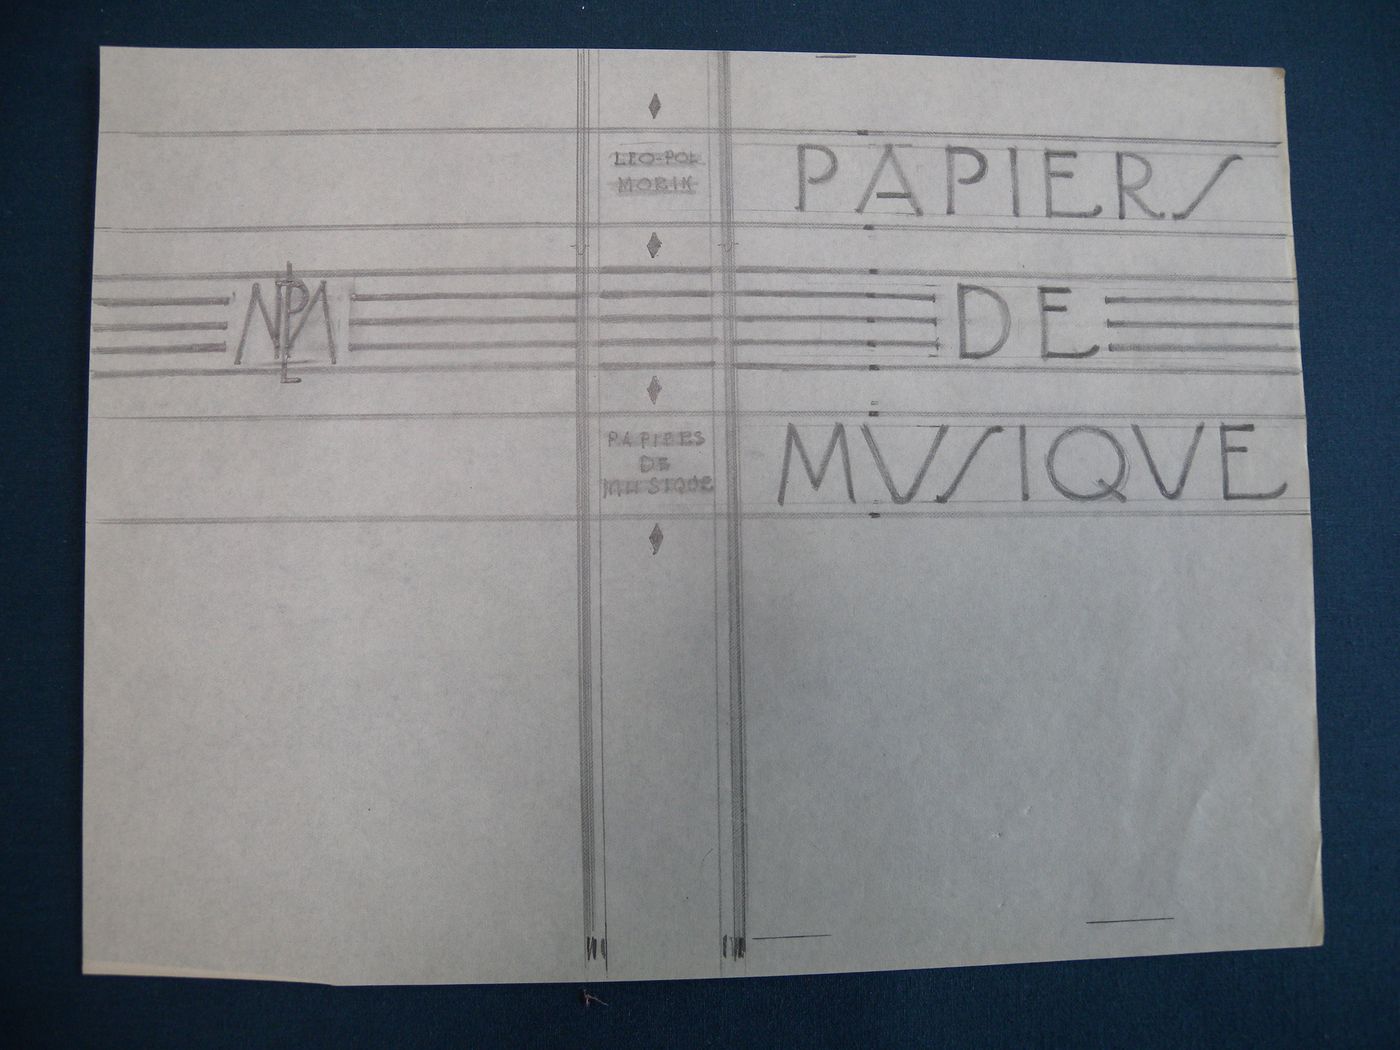 Étude pour la reliure du livre "Papiers de musique" par Léo-Pol Morin publié en 1930